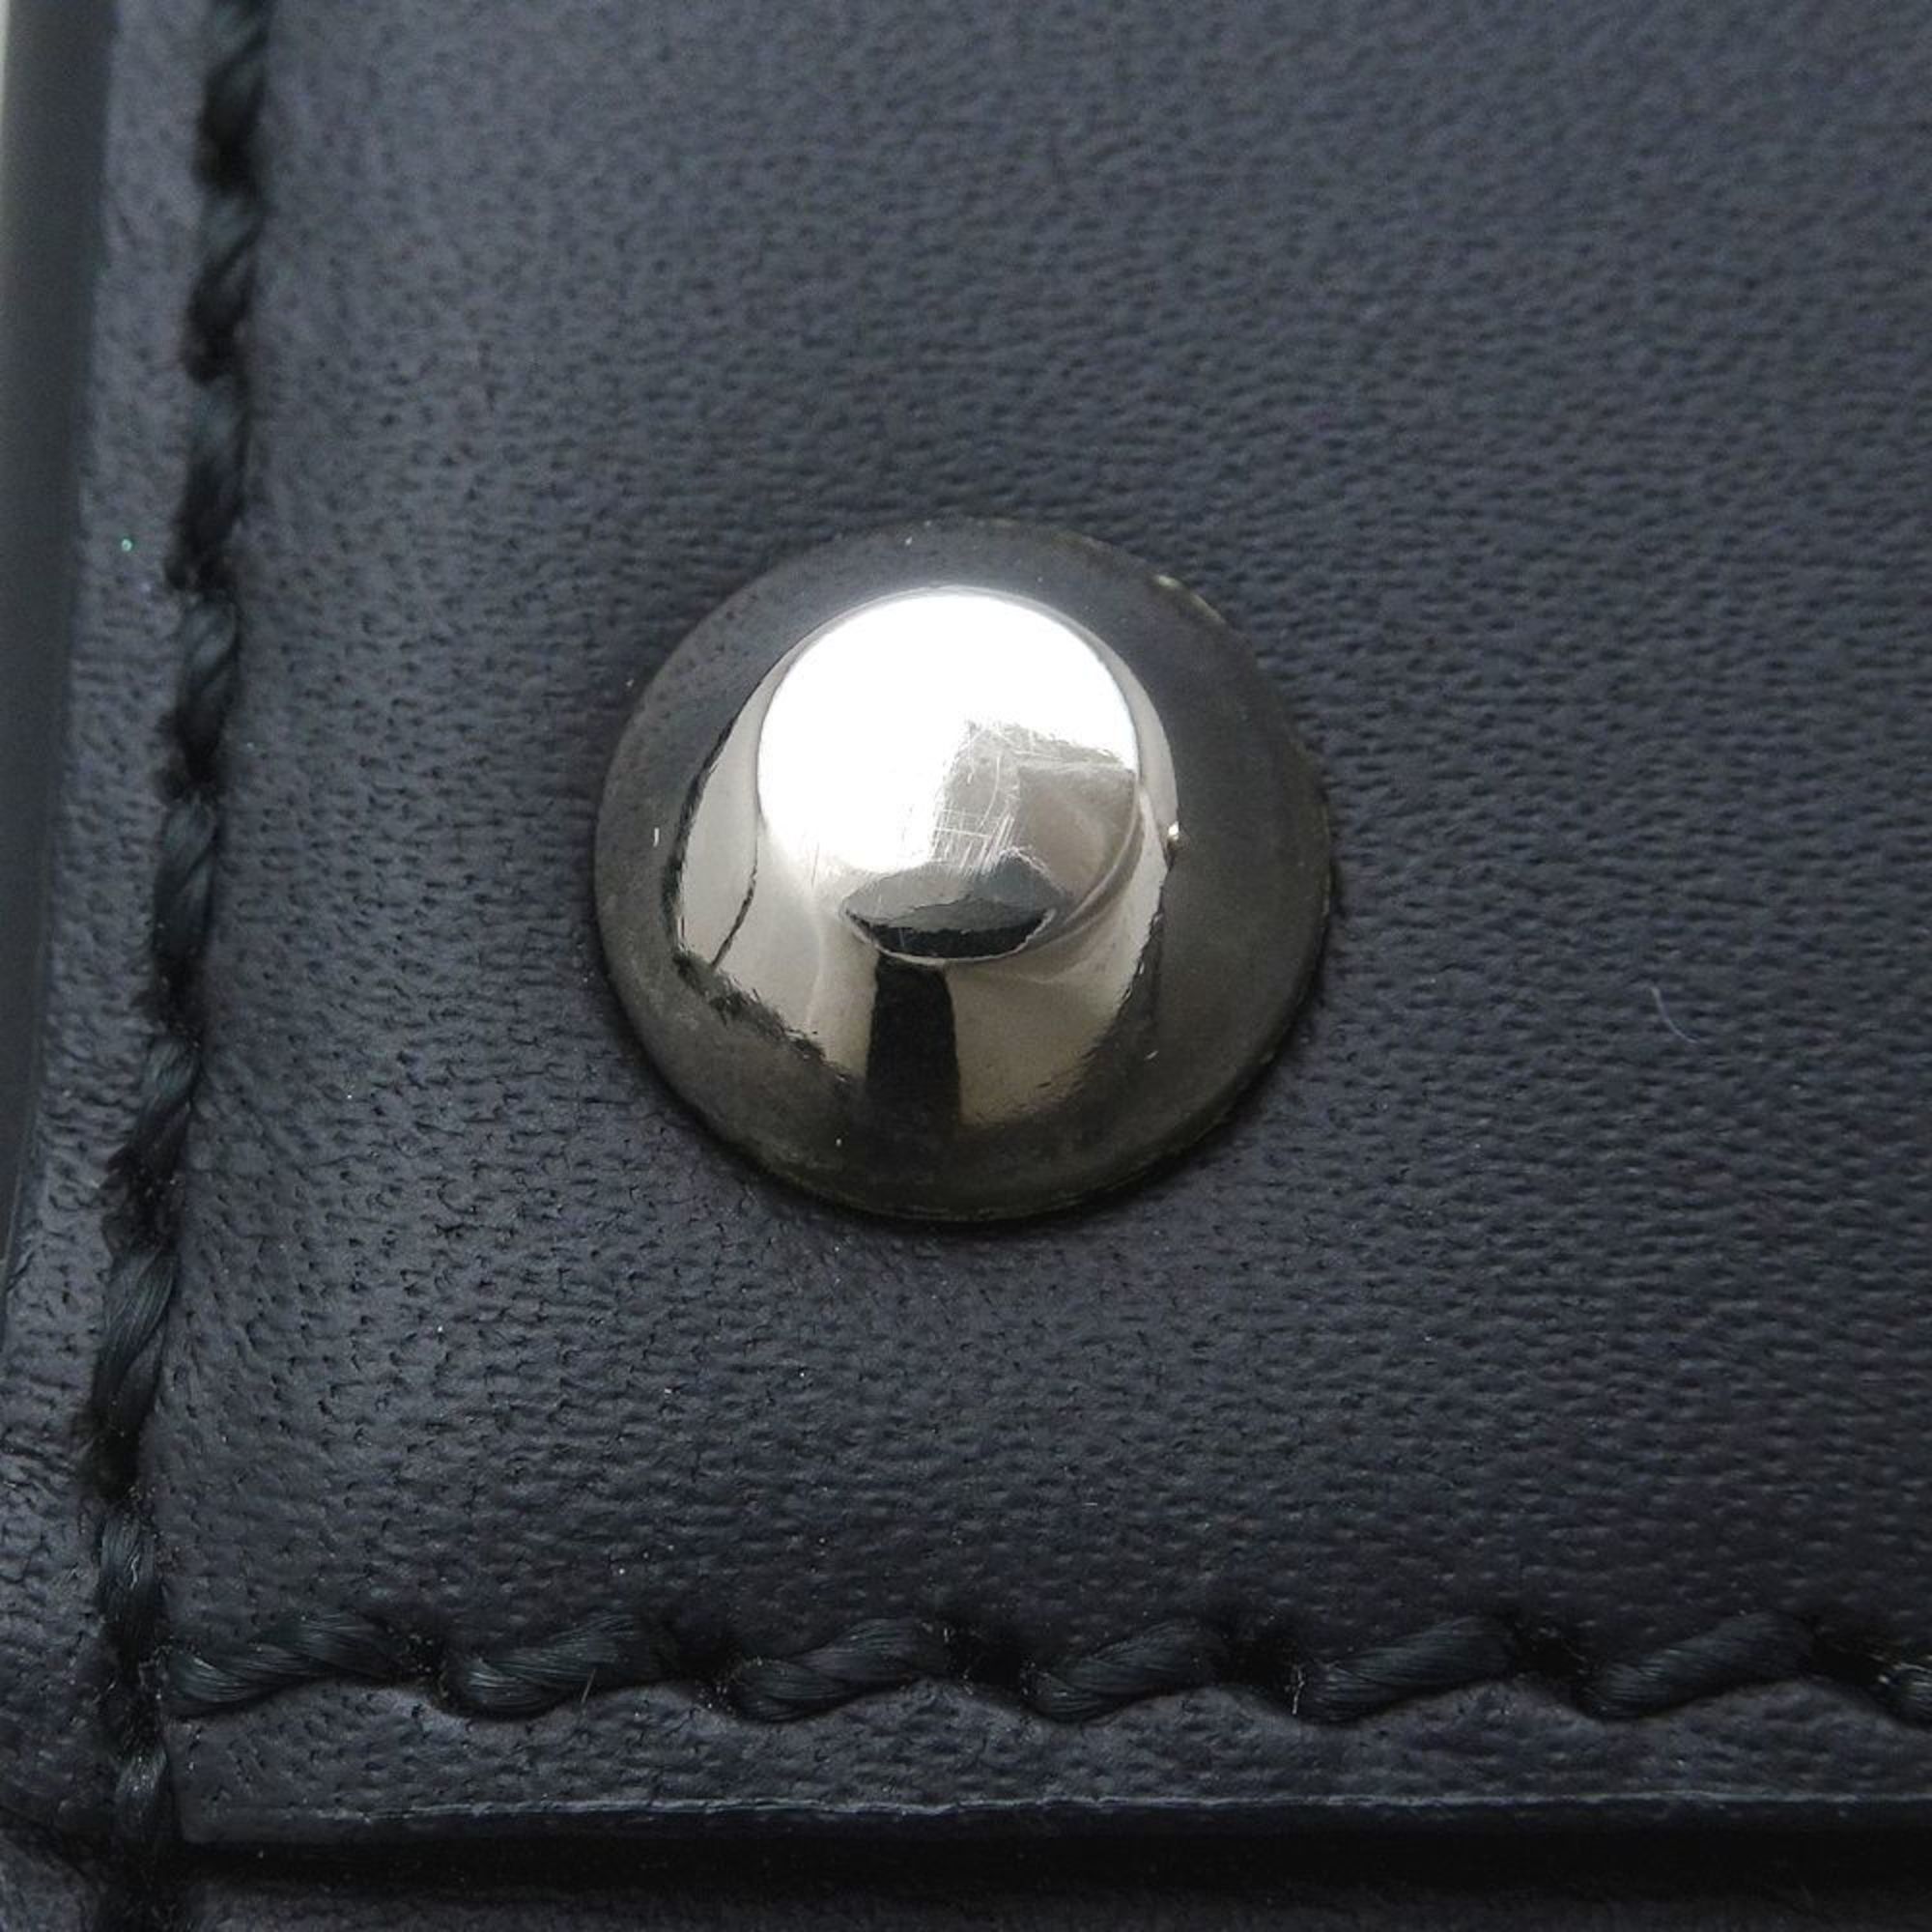 BURBERRY Shoulder bag Leather Black 351240